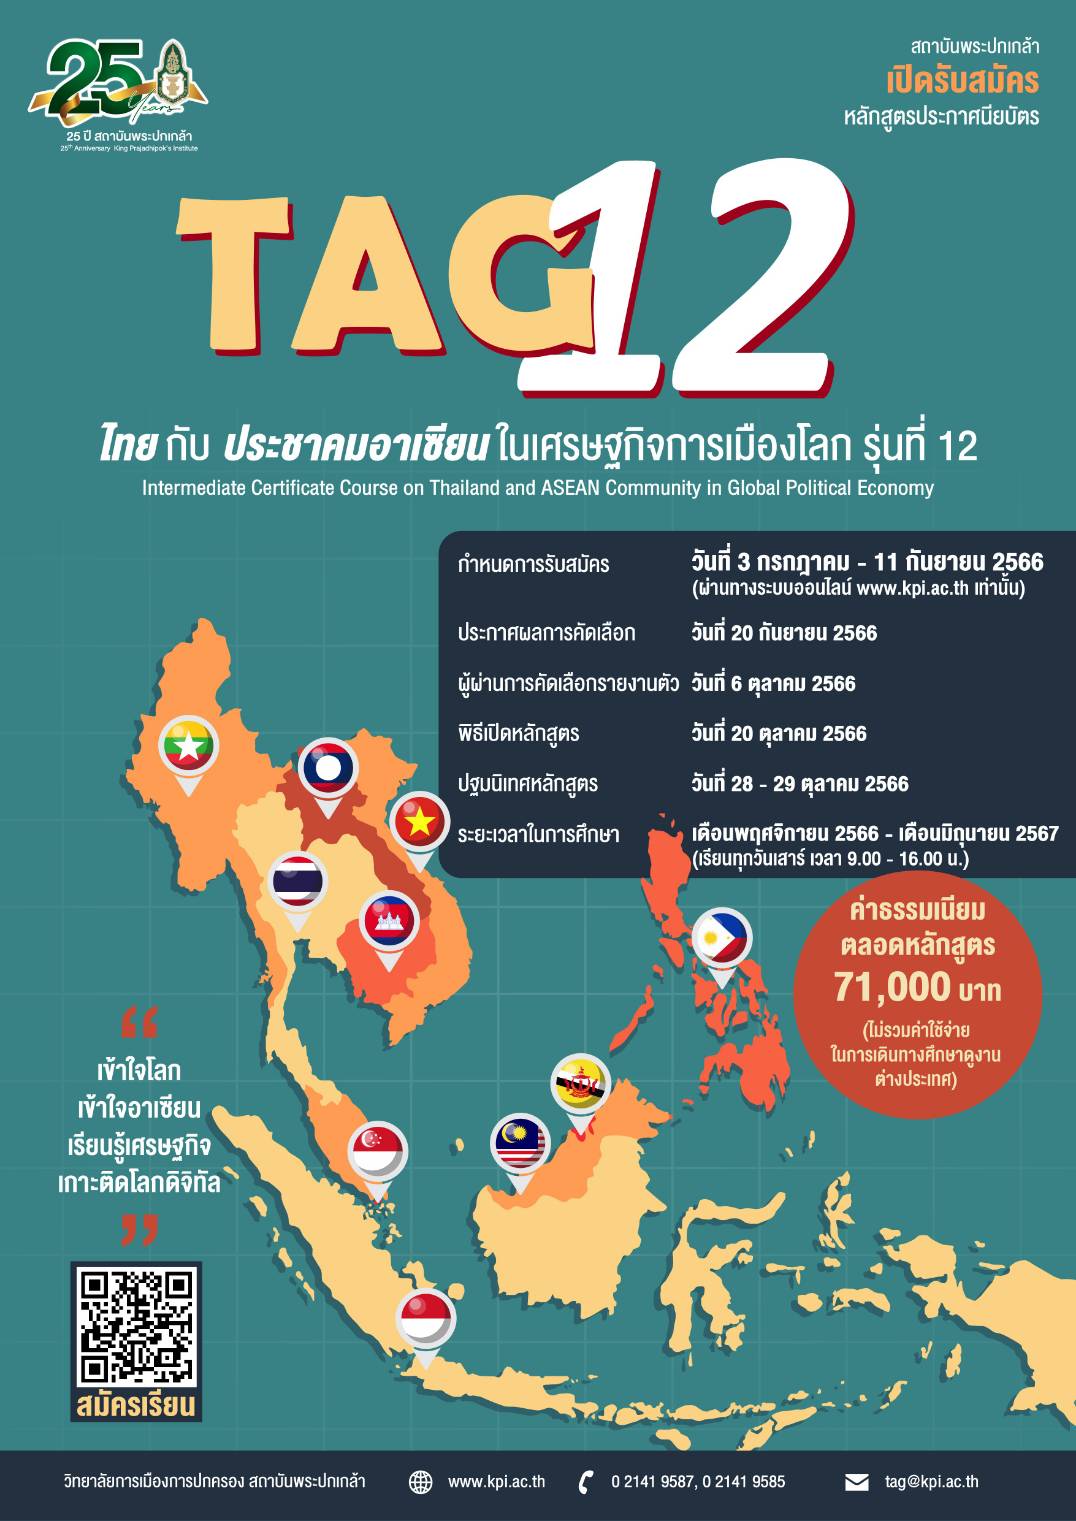 ประชาสัมพันธ์หลักสูตรไทยกับประชาคมอาเซียนในเศรษฐกิจการเมืองโลก รุ่นที่ 12